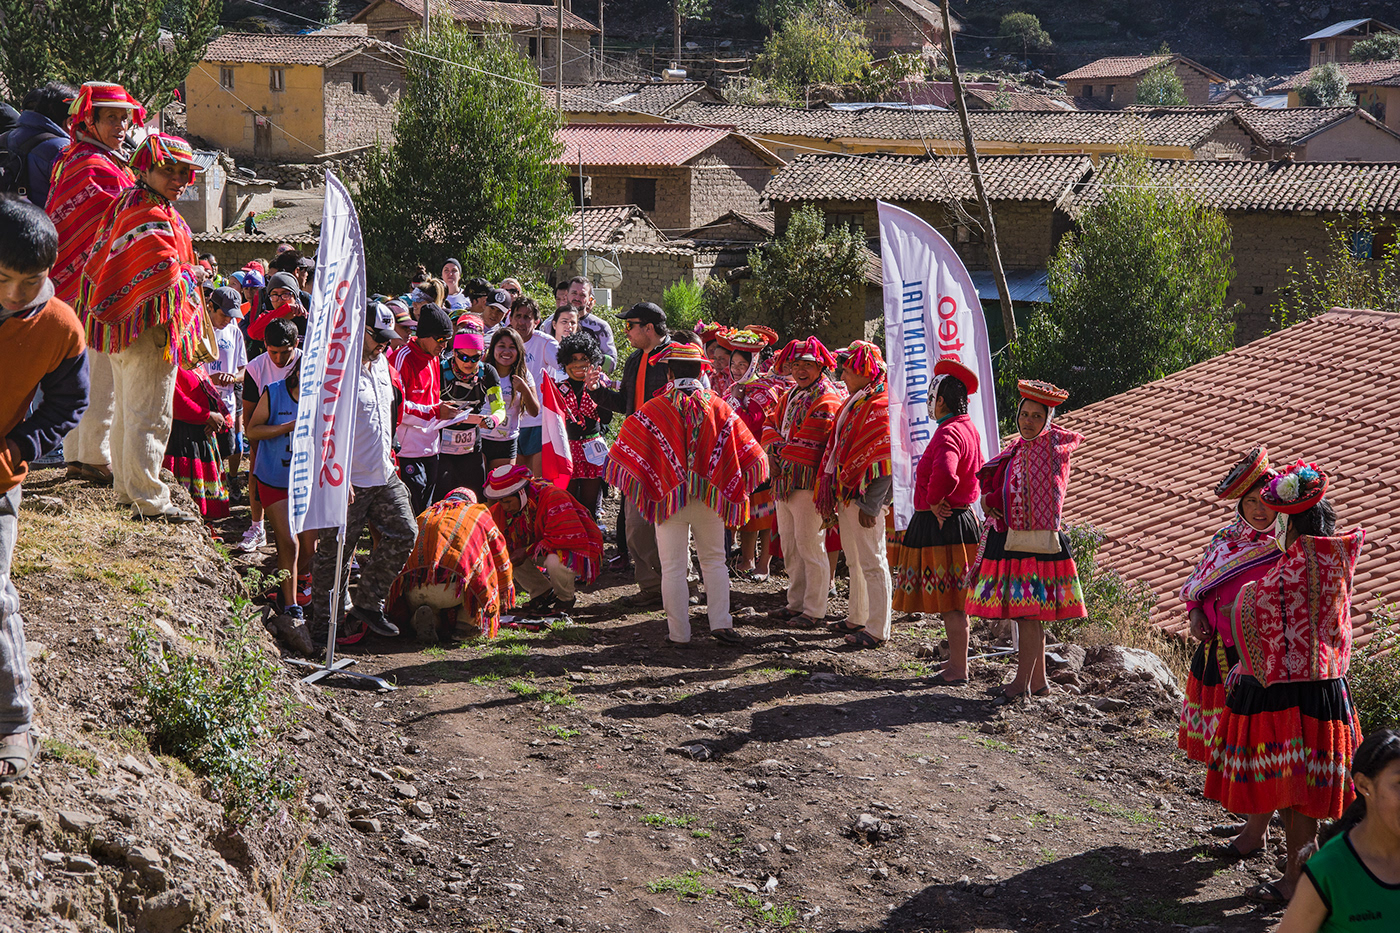 cusco deporte gps location Marathon peru race